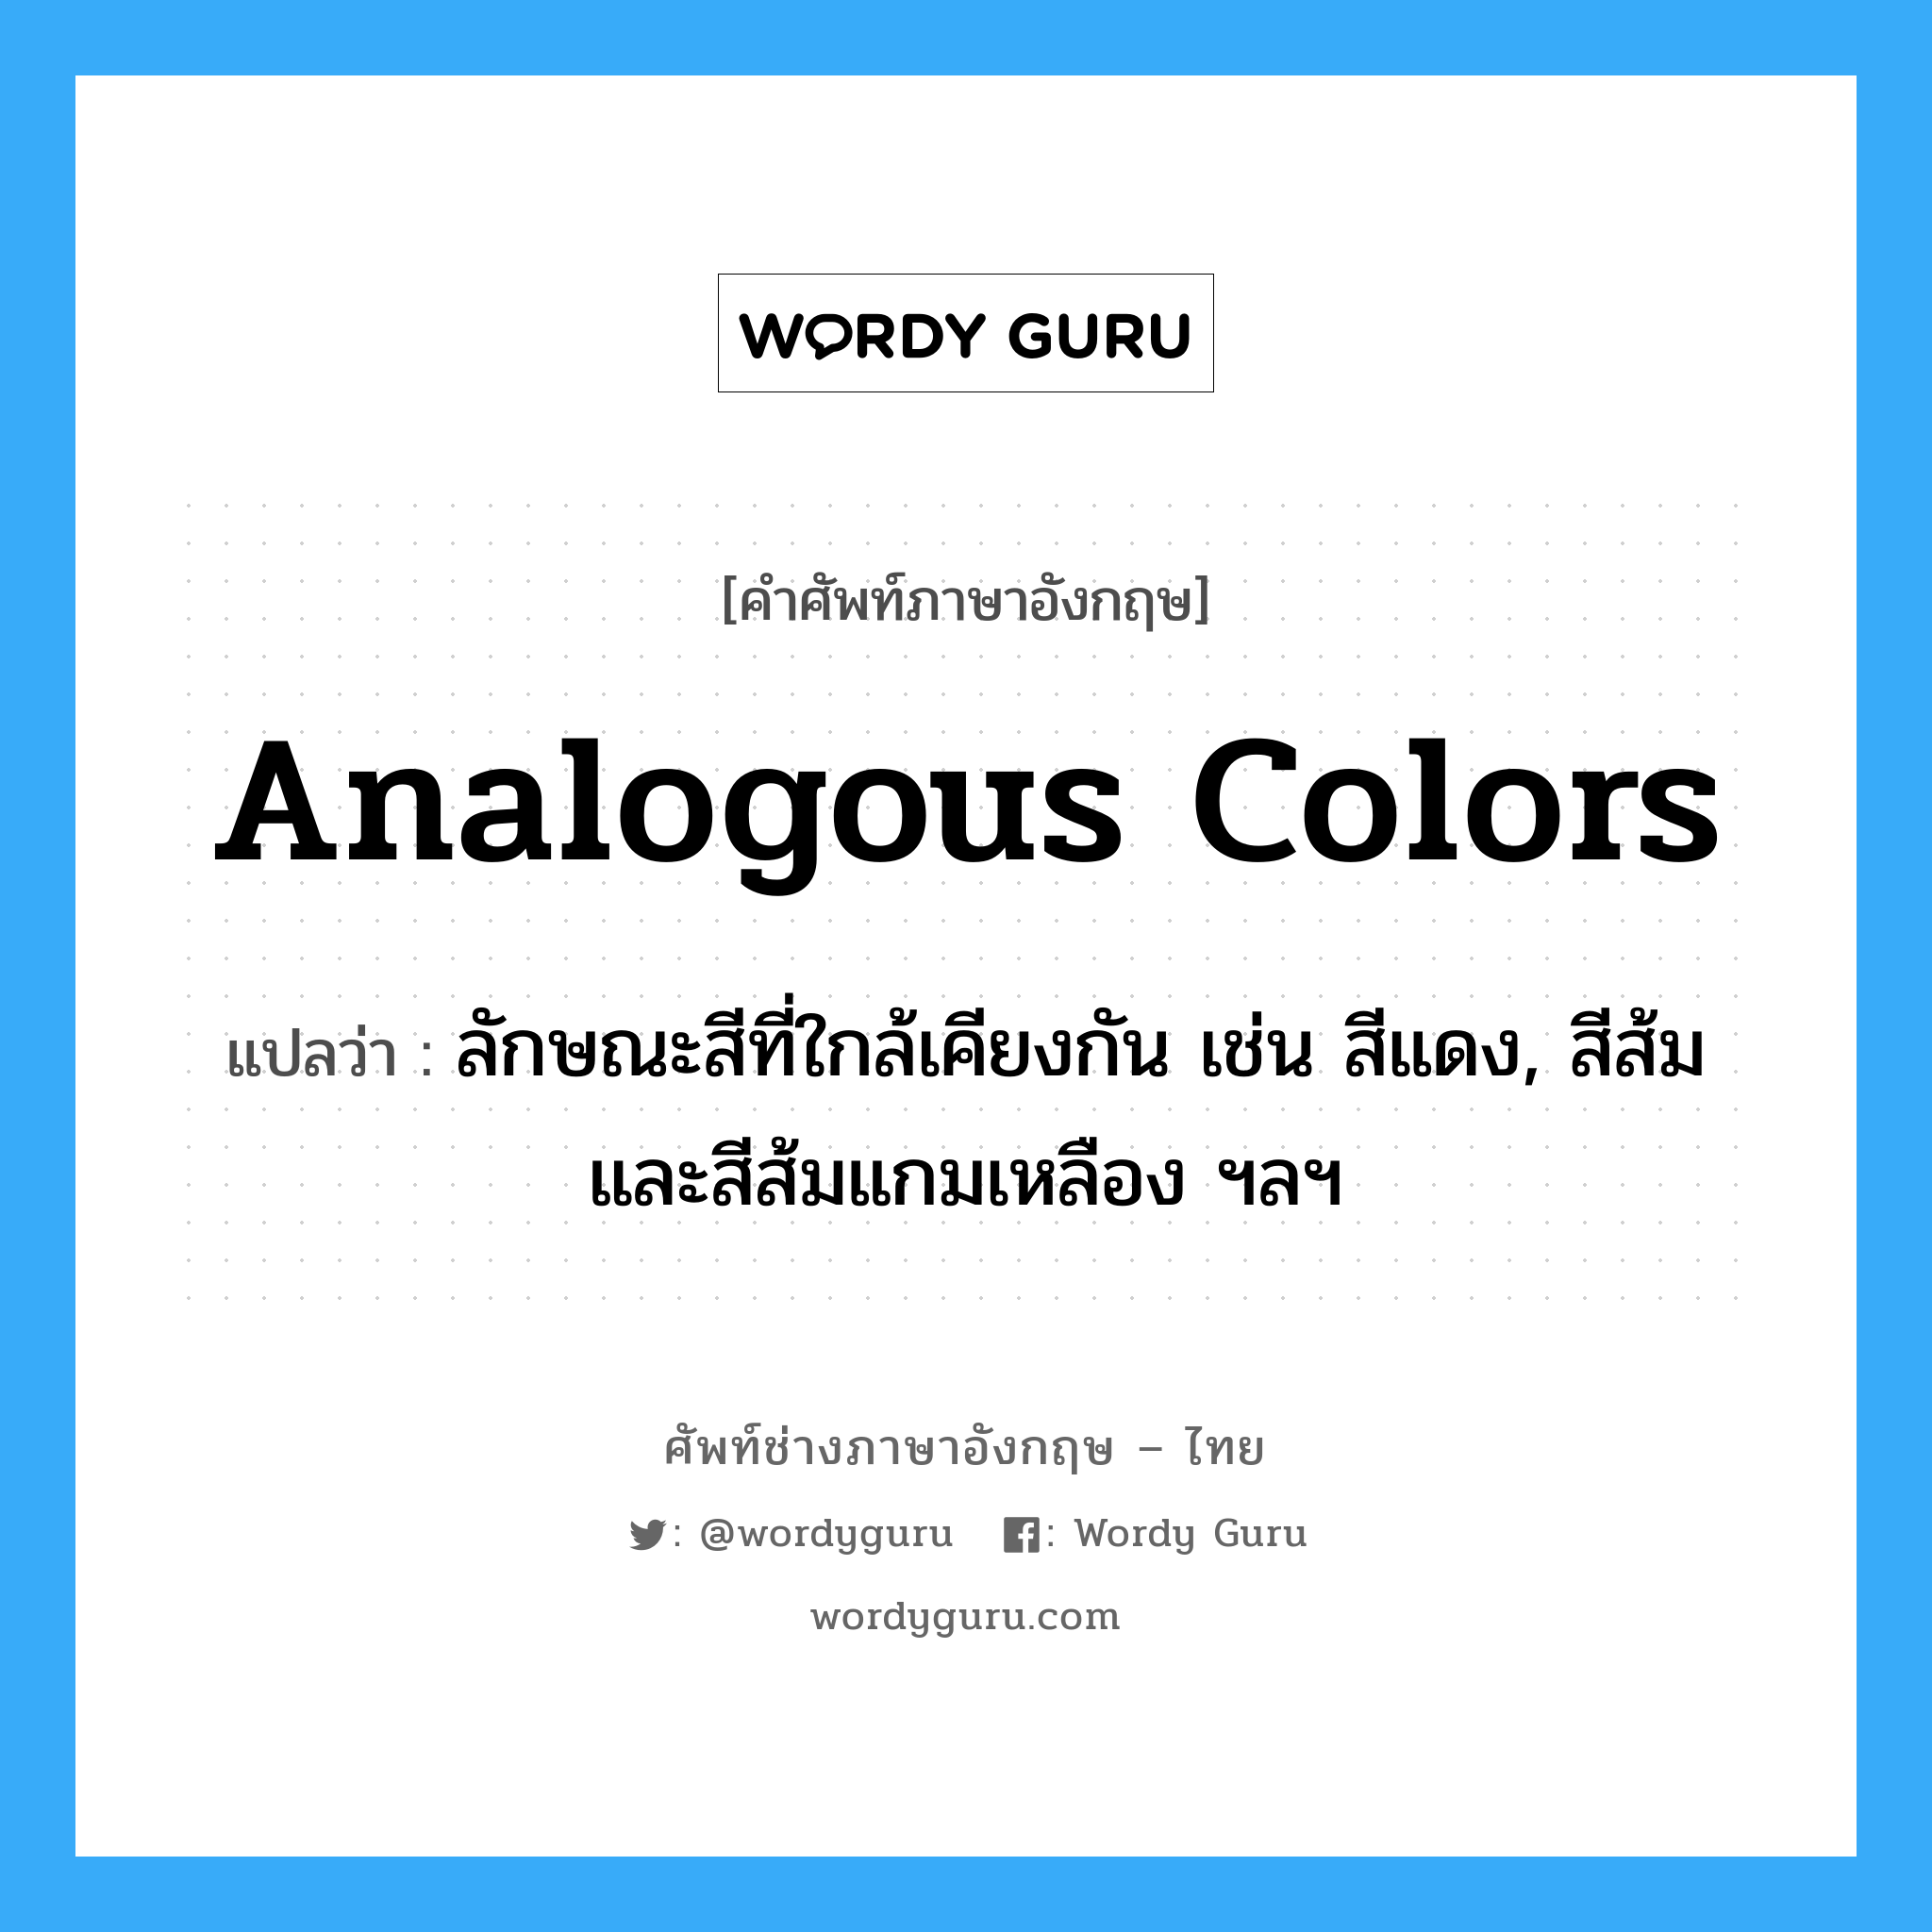 analogous colors แปลว่า?, คำศัพท์ช่างภาษาอังกฤษ - ไทย analogous colors คำศัพท์ภาษาอังกฤษ analogous colors แปลว่า ลักษณะสีที่ใกล้เคียงกัน เช่น สีแดง, สีส้ม และสีส้มแกมเหลือง ฯลฯ